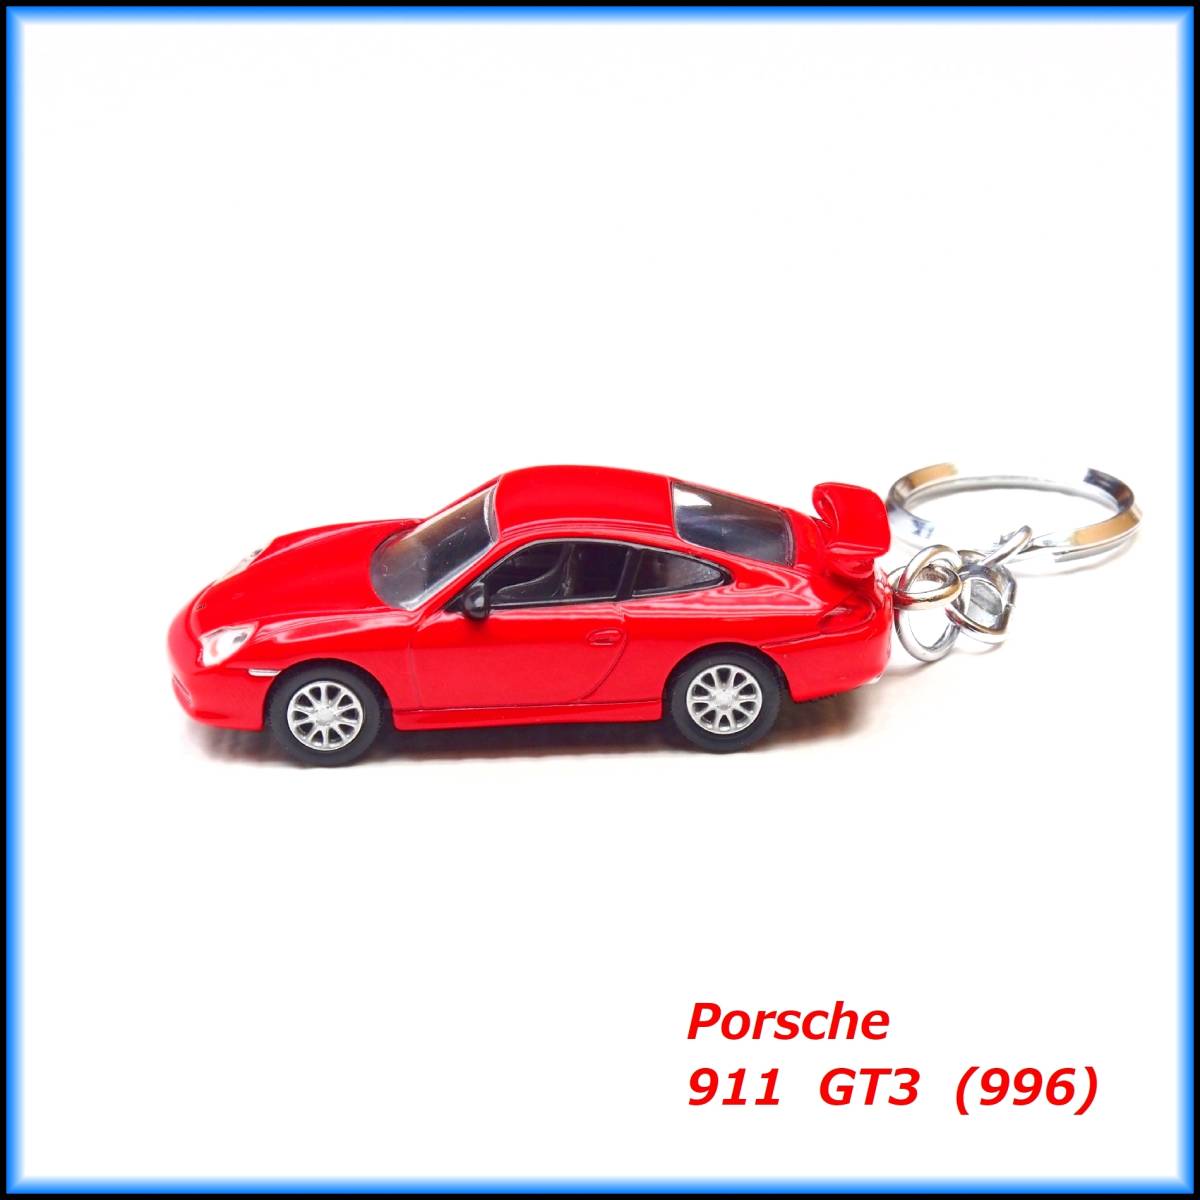 ポルシェ 911 GT3 996 ミニカー ストラップ キーホルダー エアロ ホイール マフラー レカロ ライト スポイラー バンパー シート ハンドル_画像4